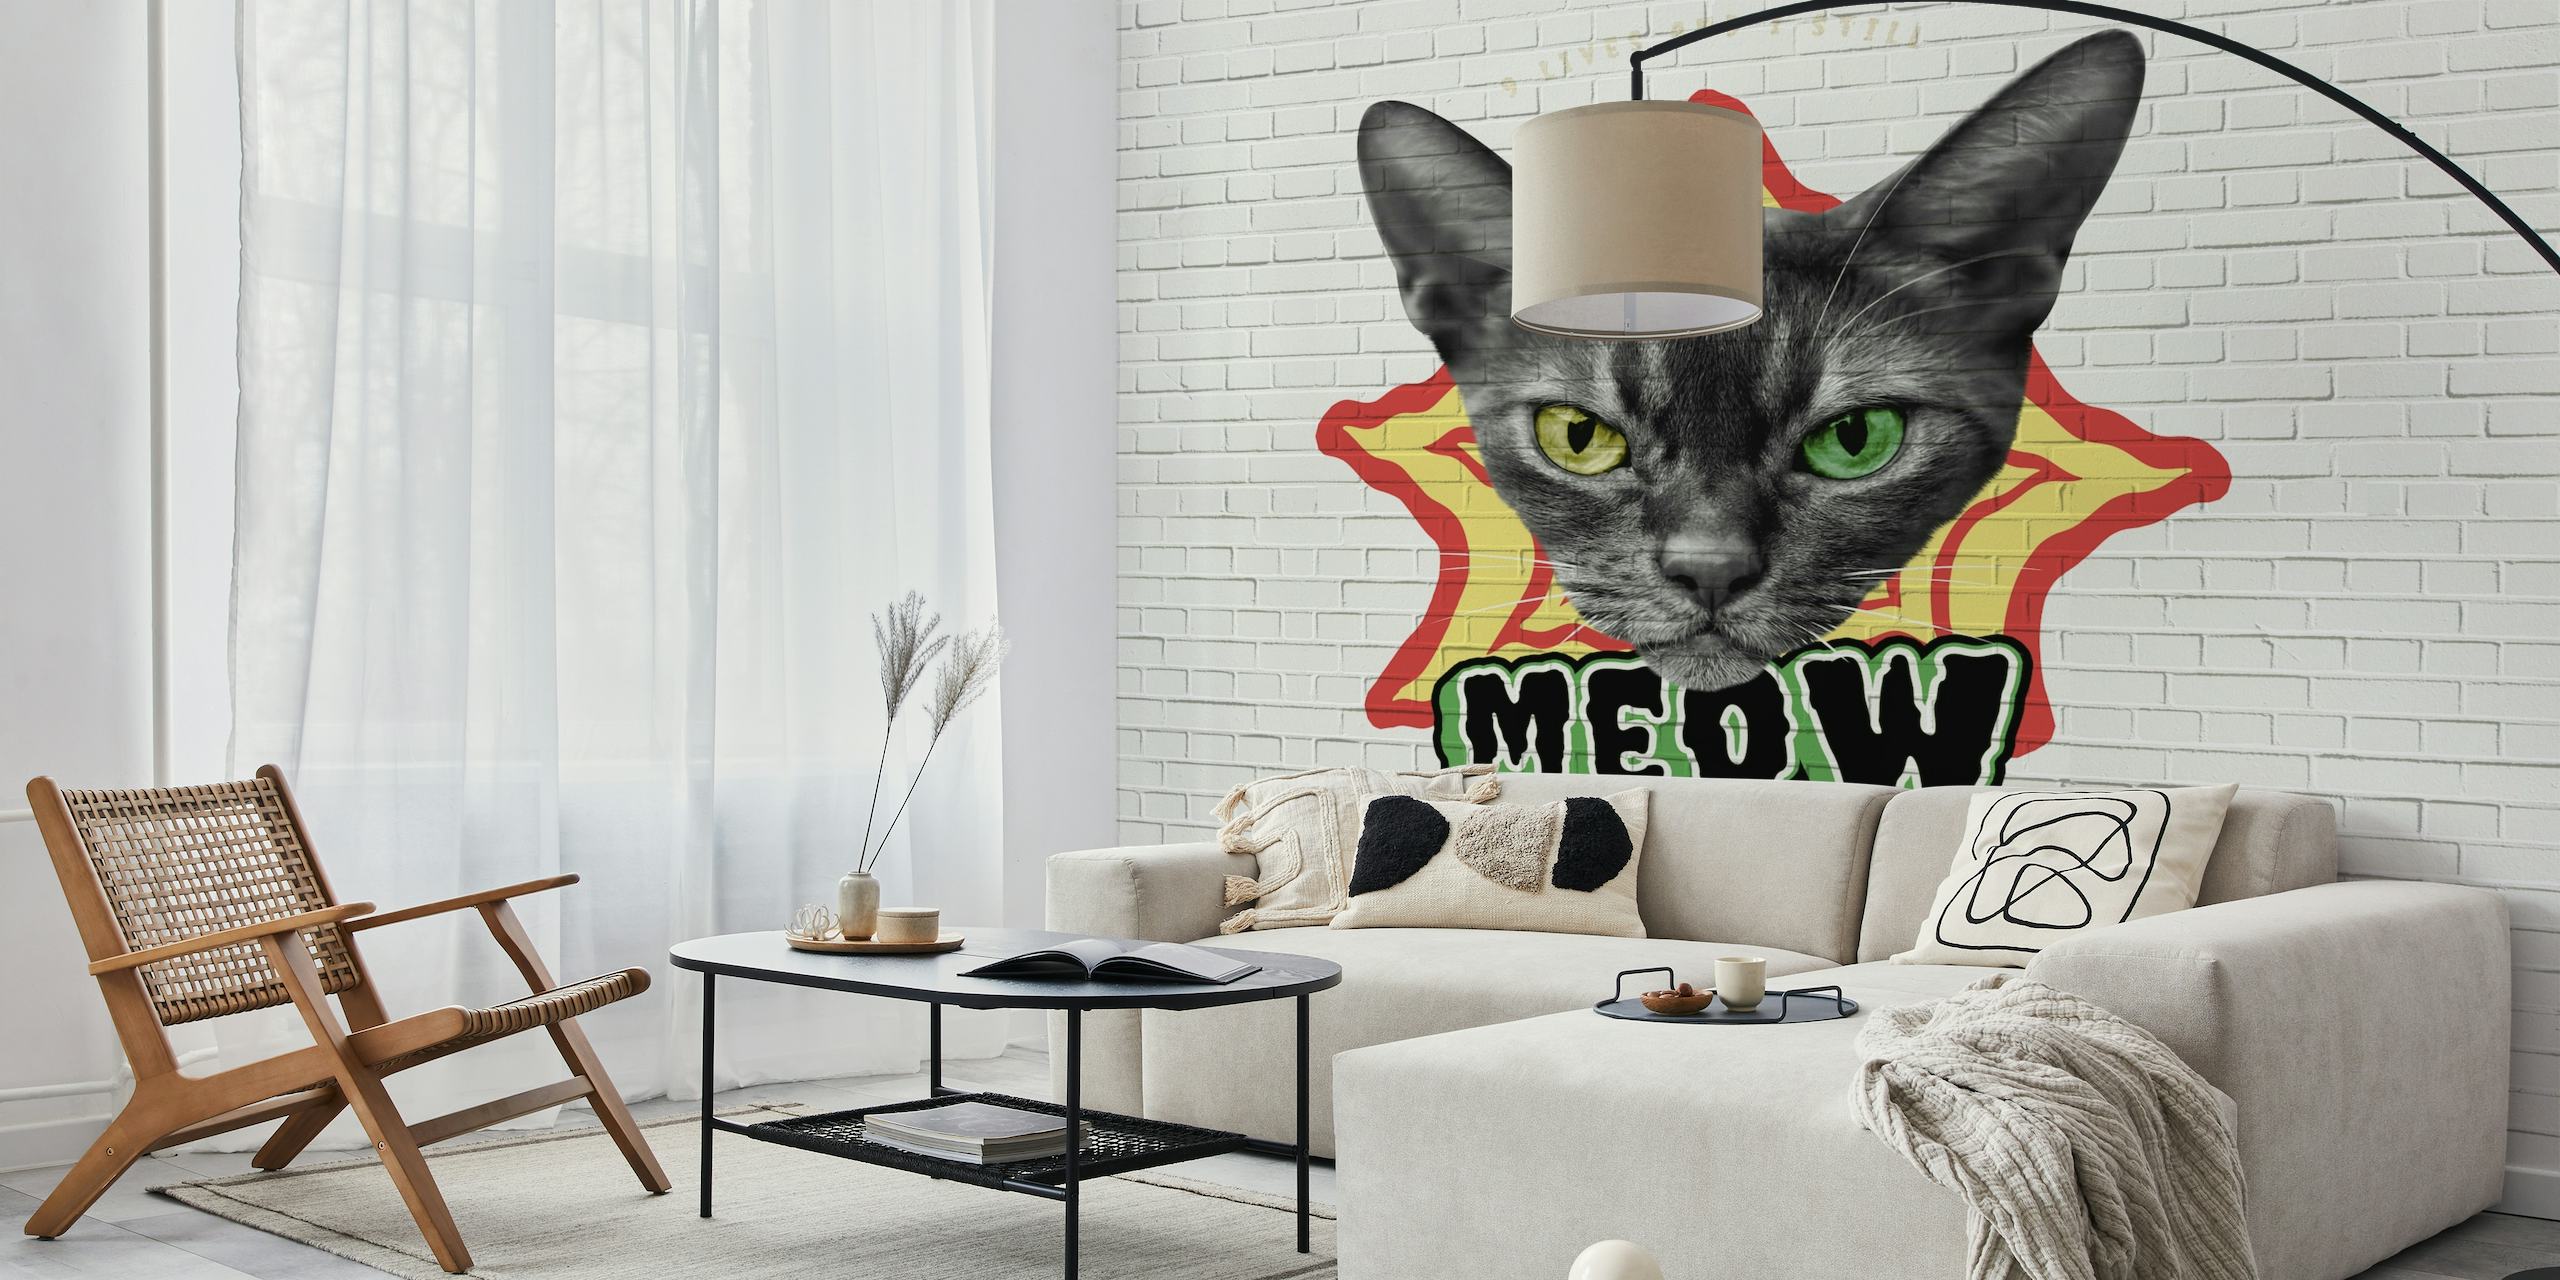 Cat Graffiti papel pintado